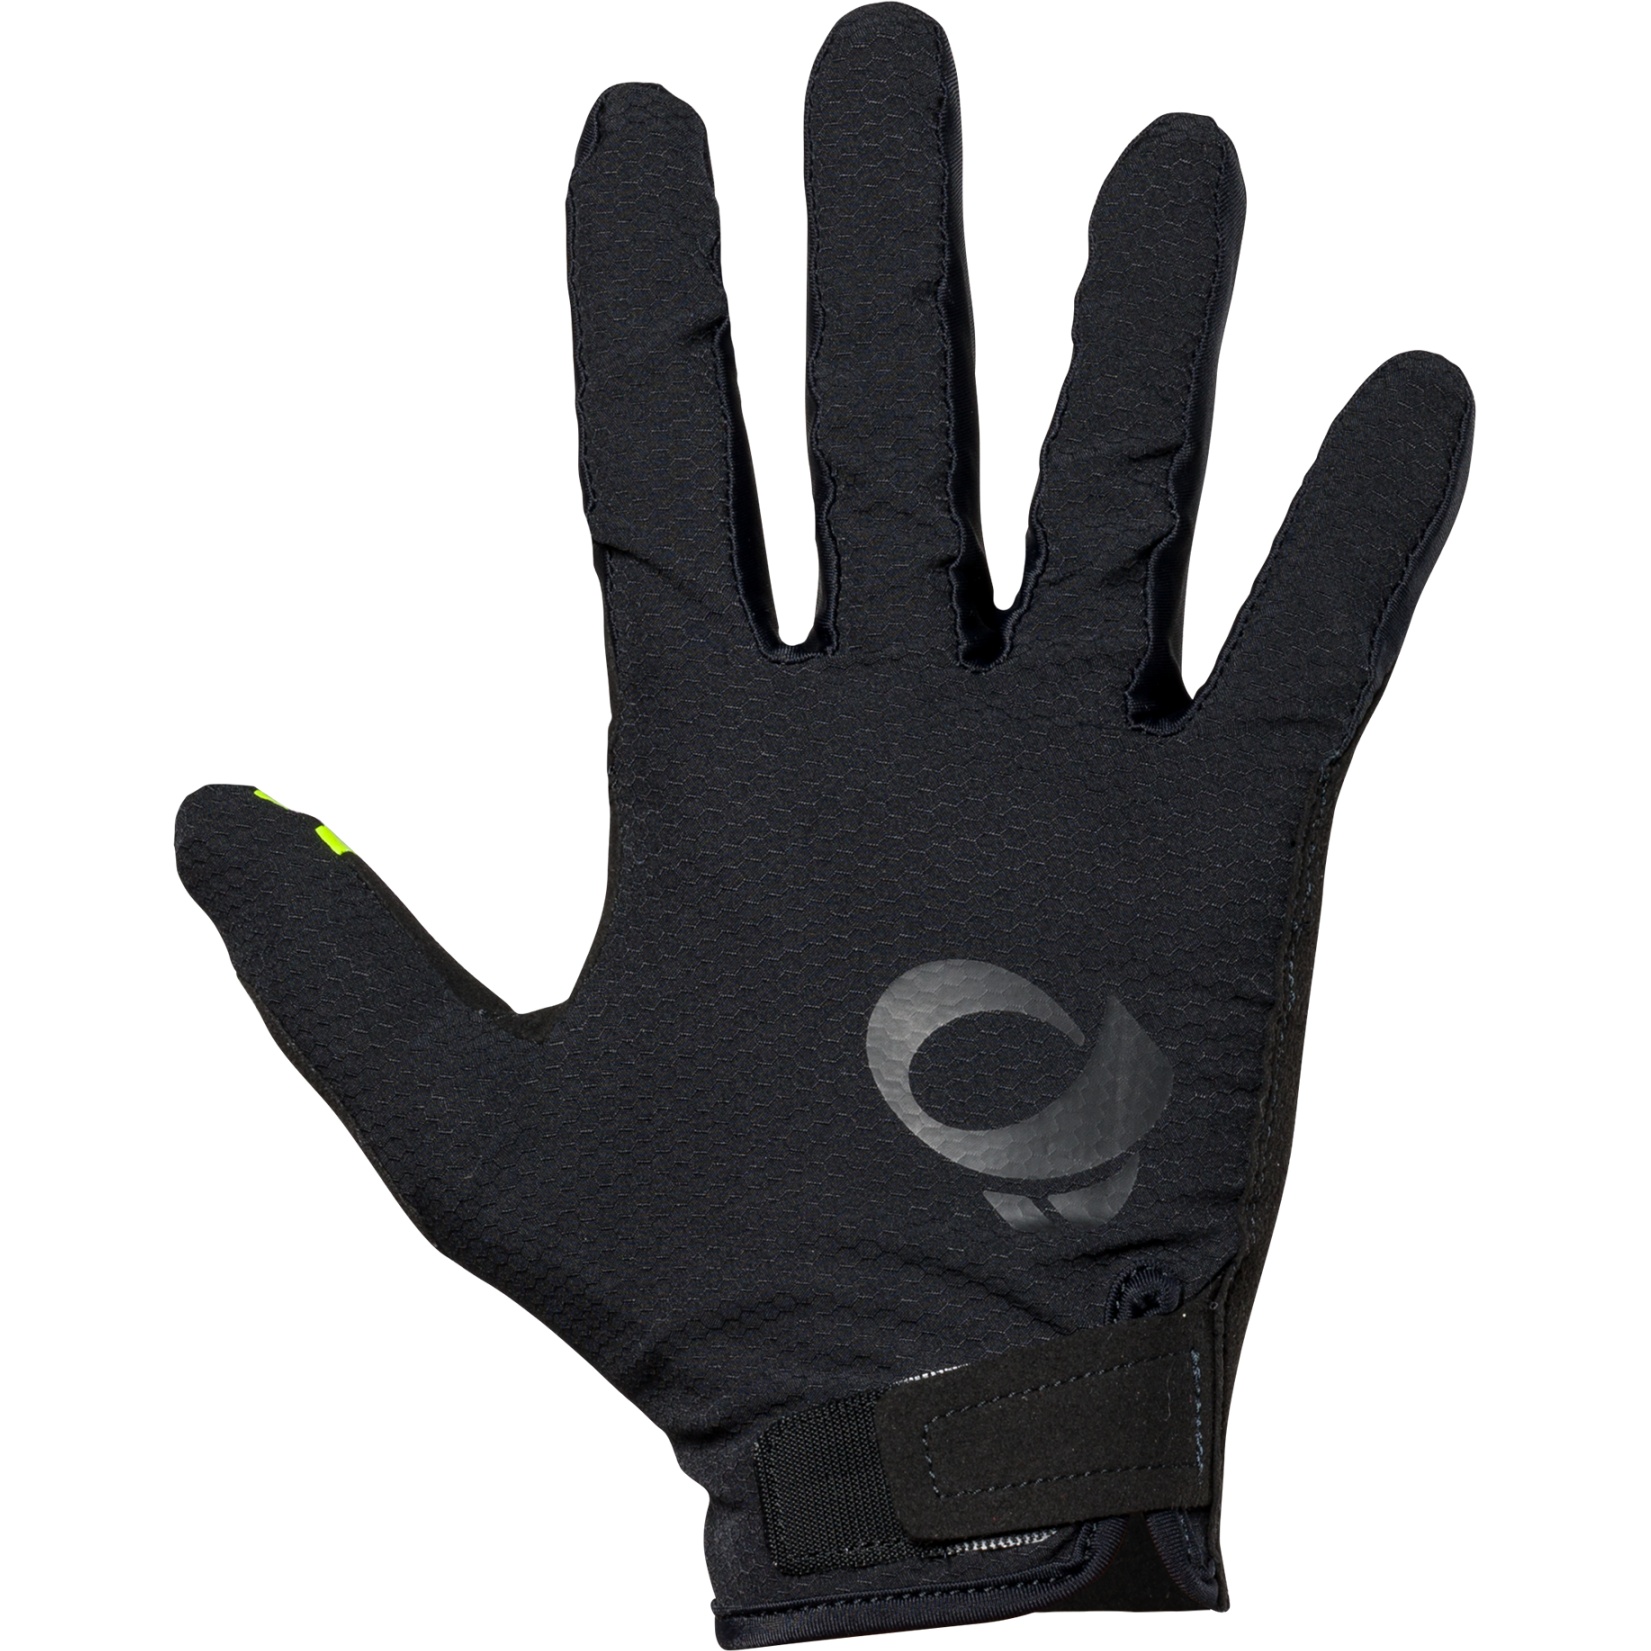 Productfoto van PEARL iZUMi Summit MTB Handschoenen Heren 14142402 - zwart - 021